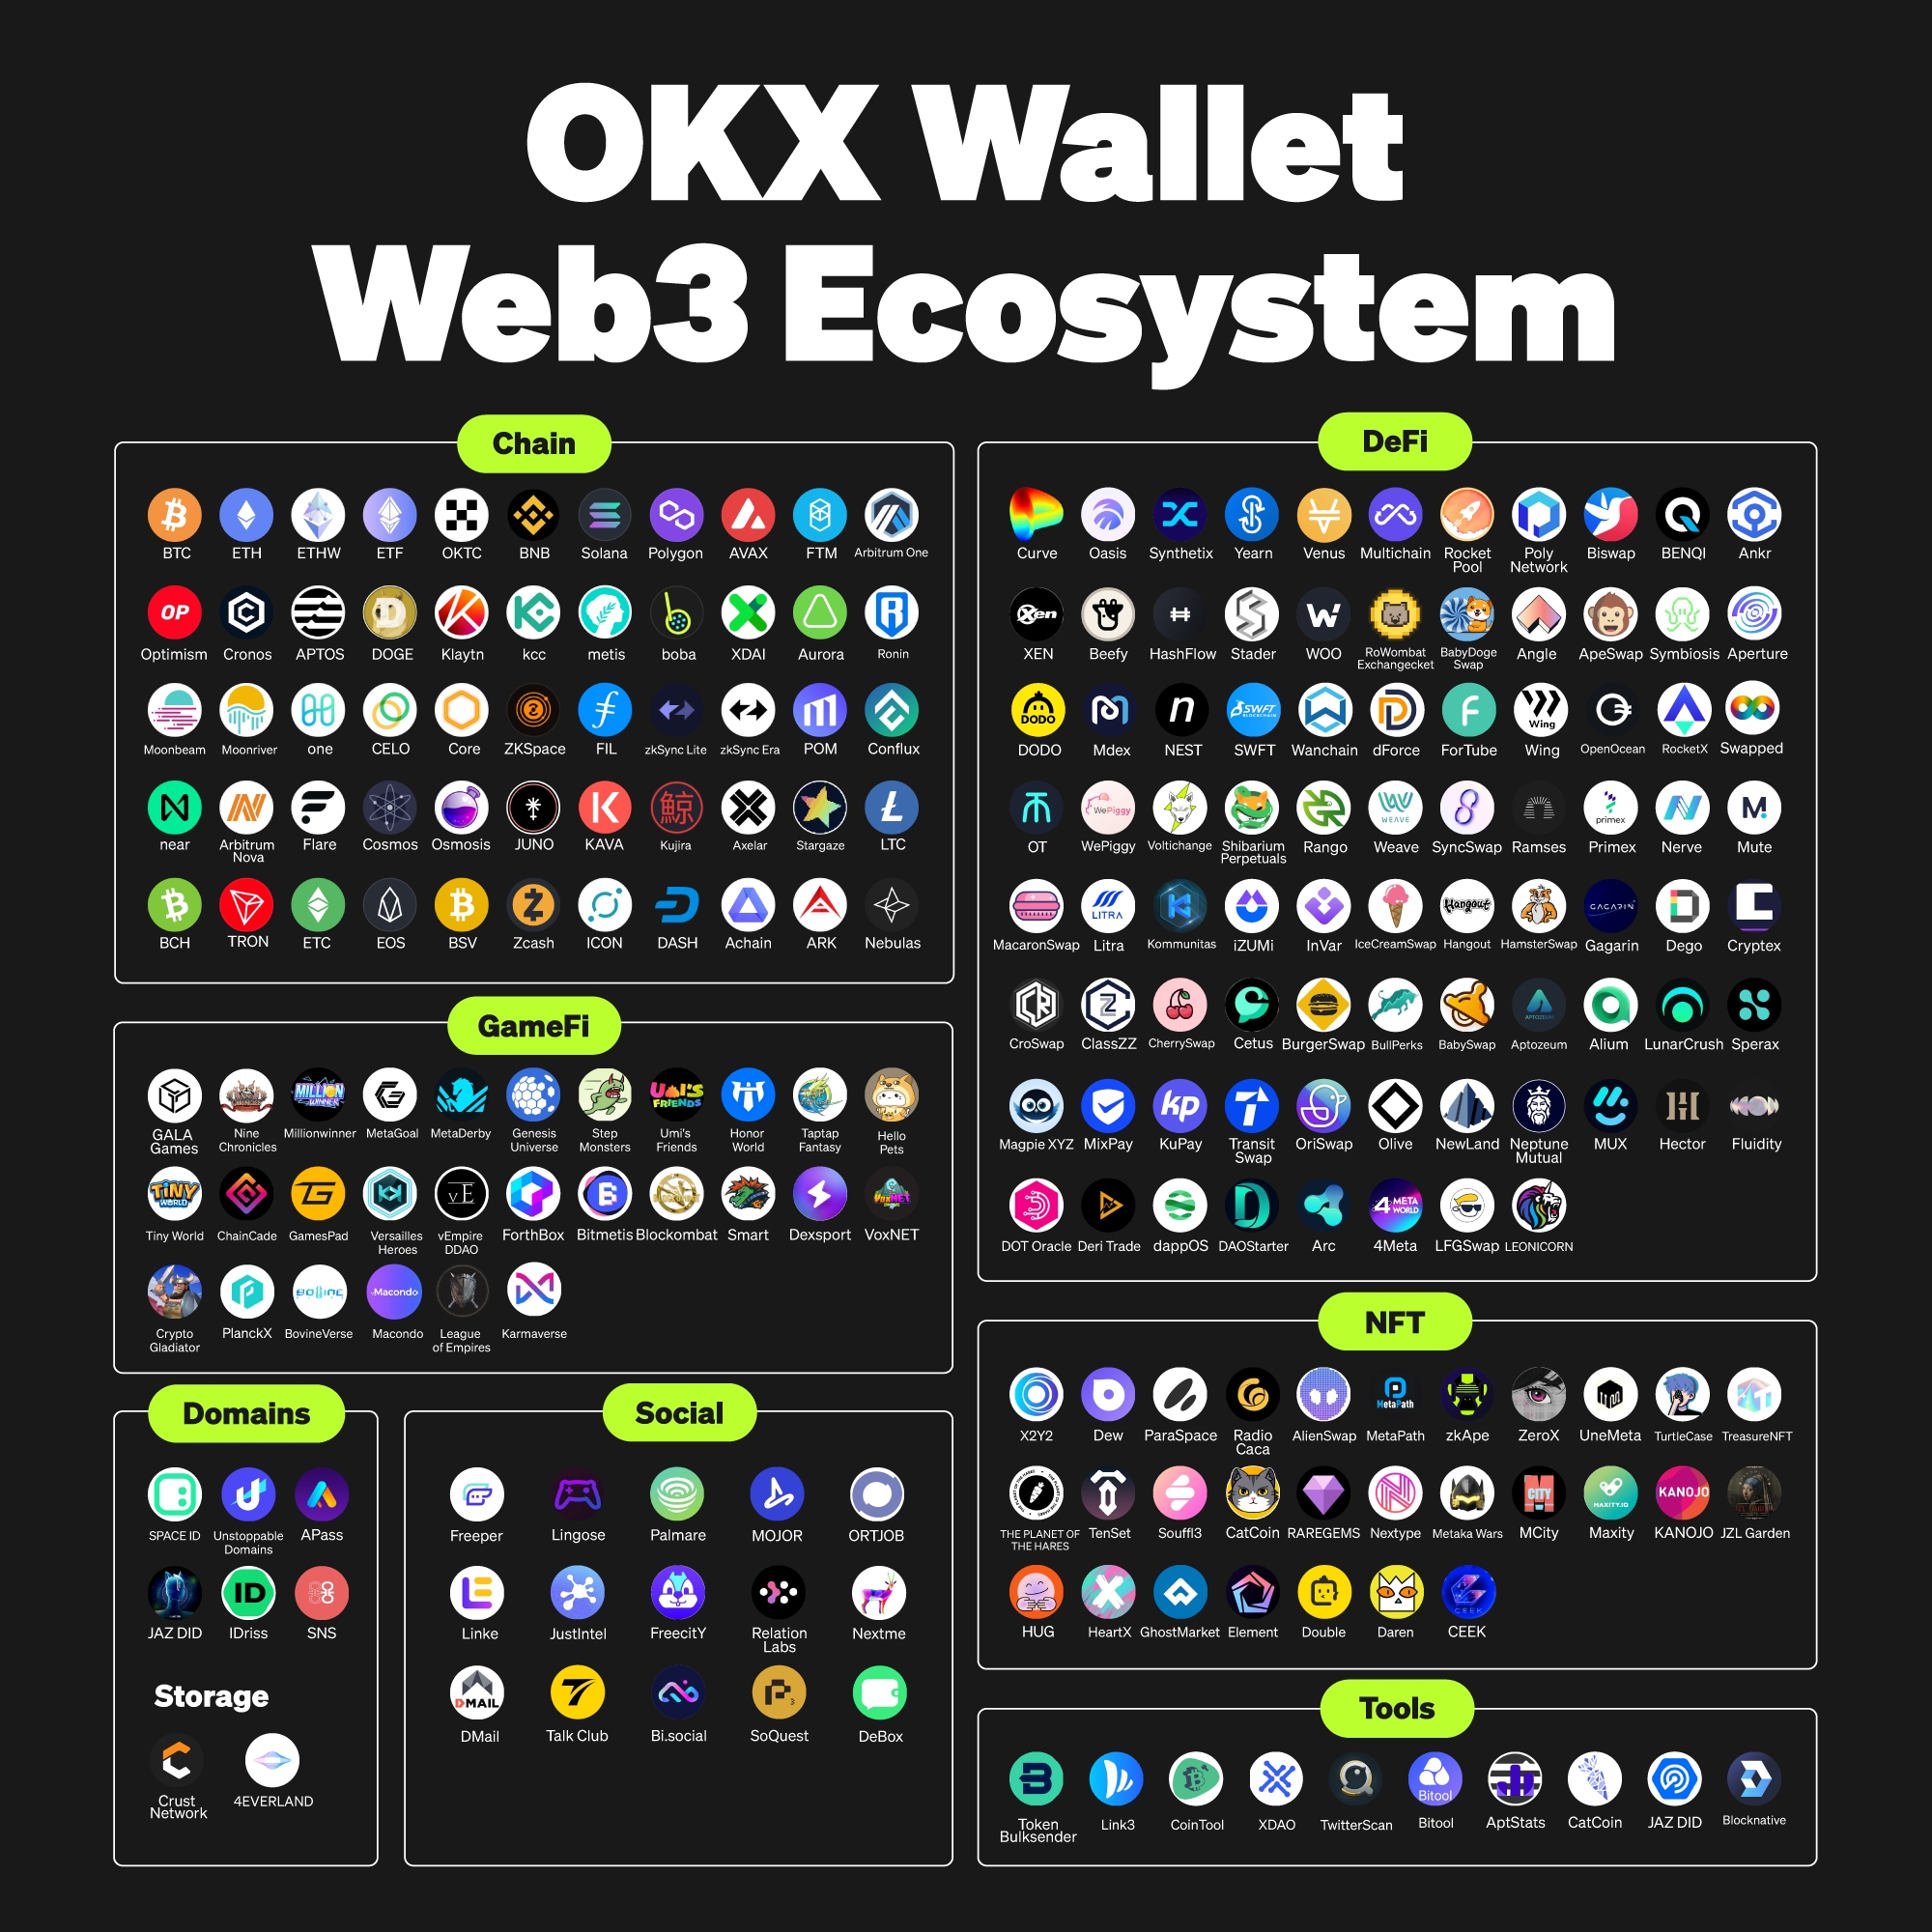 OKX Wallet Web3 Ecosystem